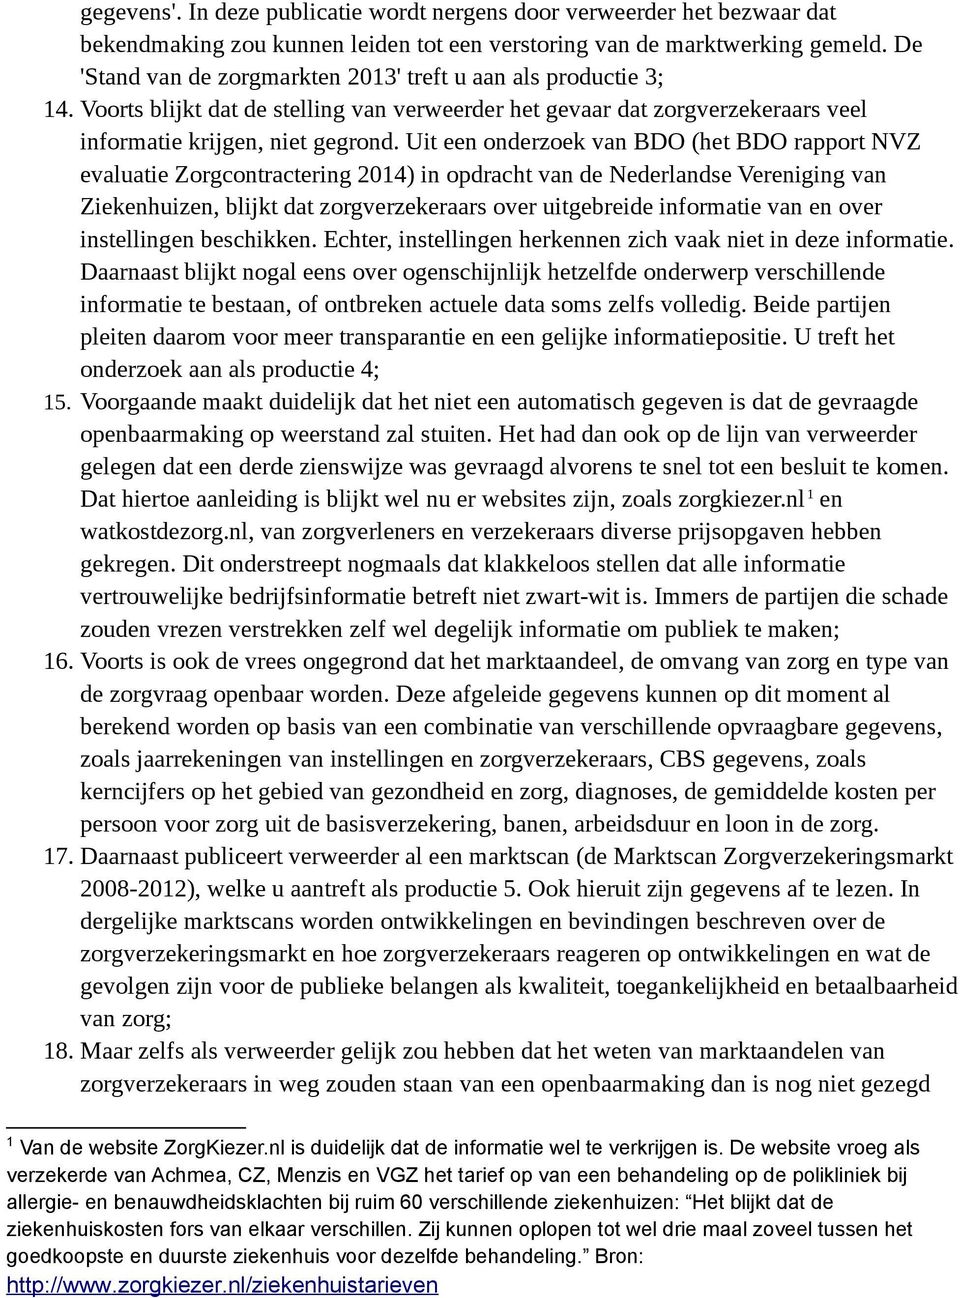 Uit een onderzoek van BDO (het BDO rapport NVZ evaluatie Zorgcontractering 2014) in opdracht van de Nederlandse Vereniging van Ziekenhuizen, blijkt dat zorgverzekeraars over uitgebreide informatie